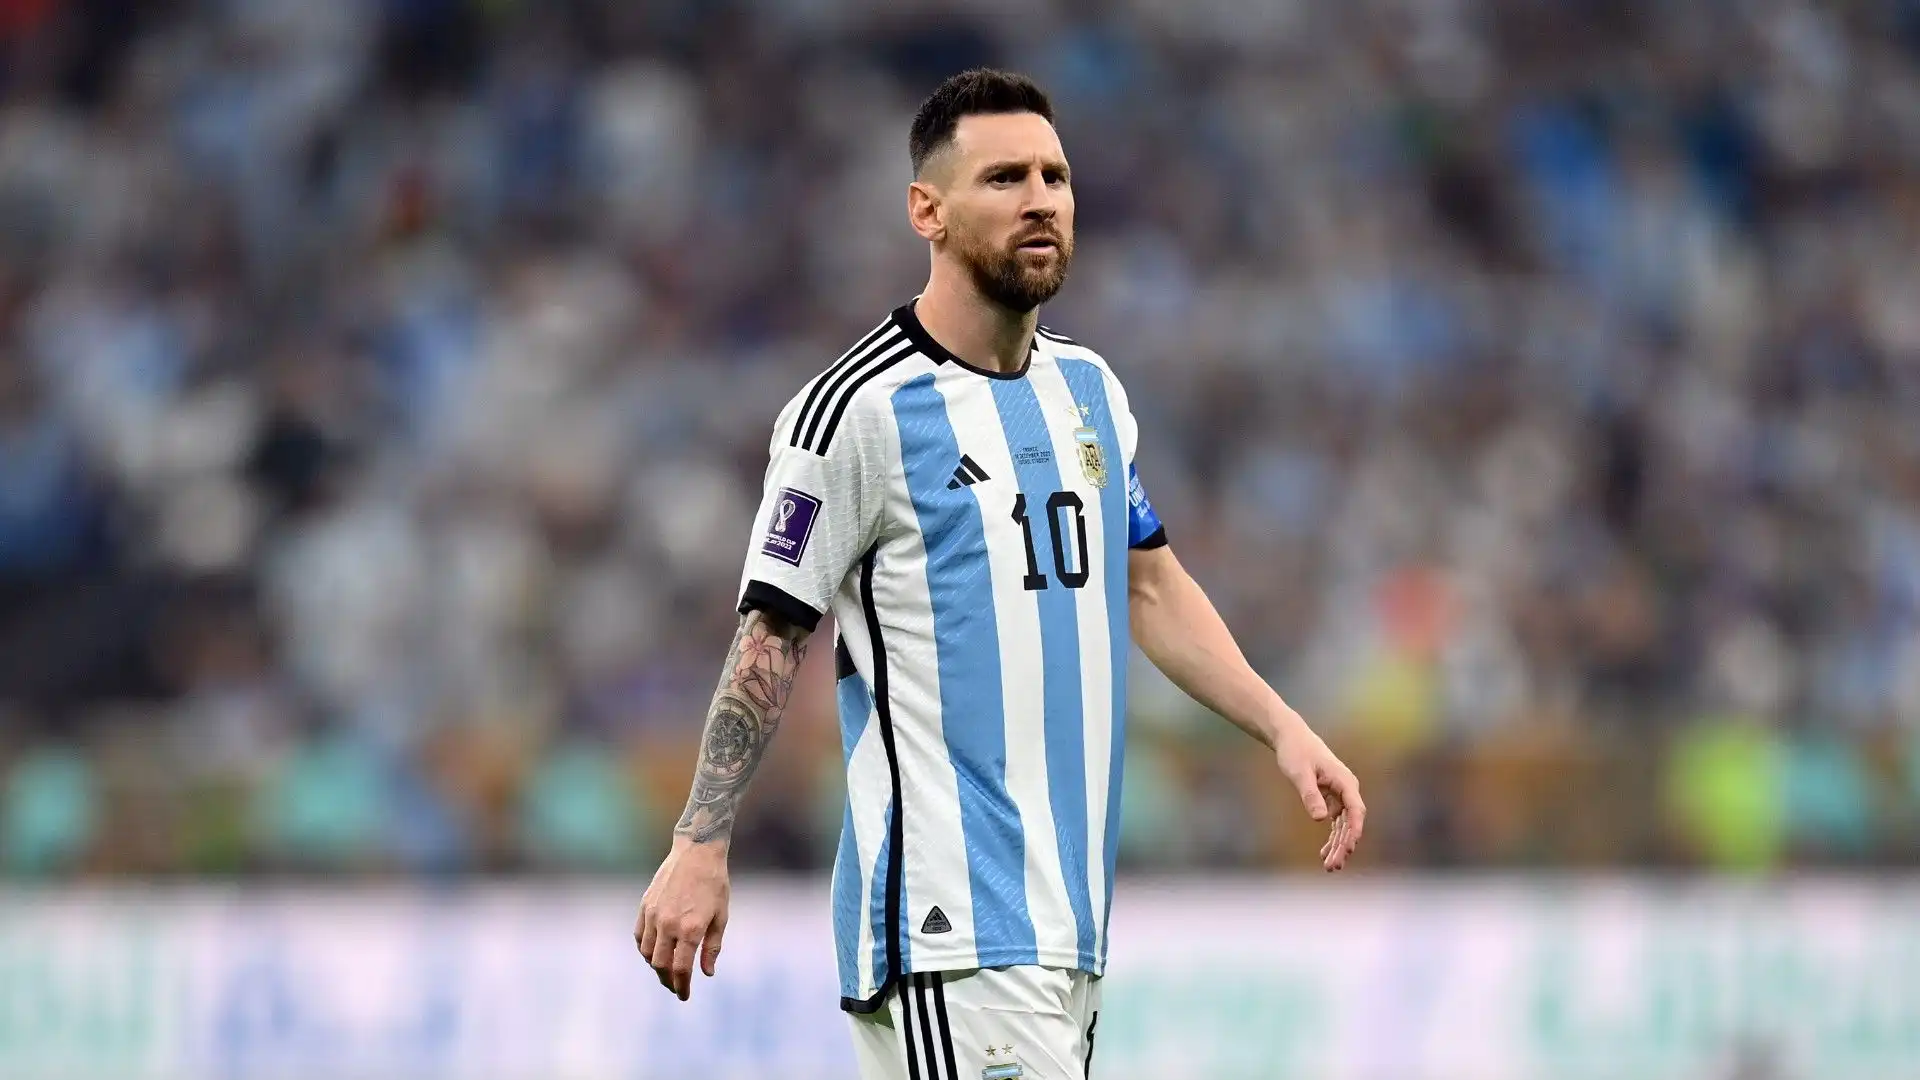 Lionel Messi (Argentina / Paris Saint Germain)